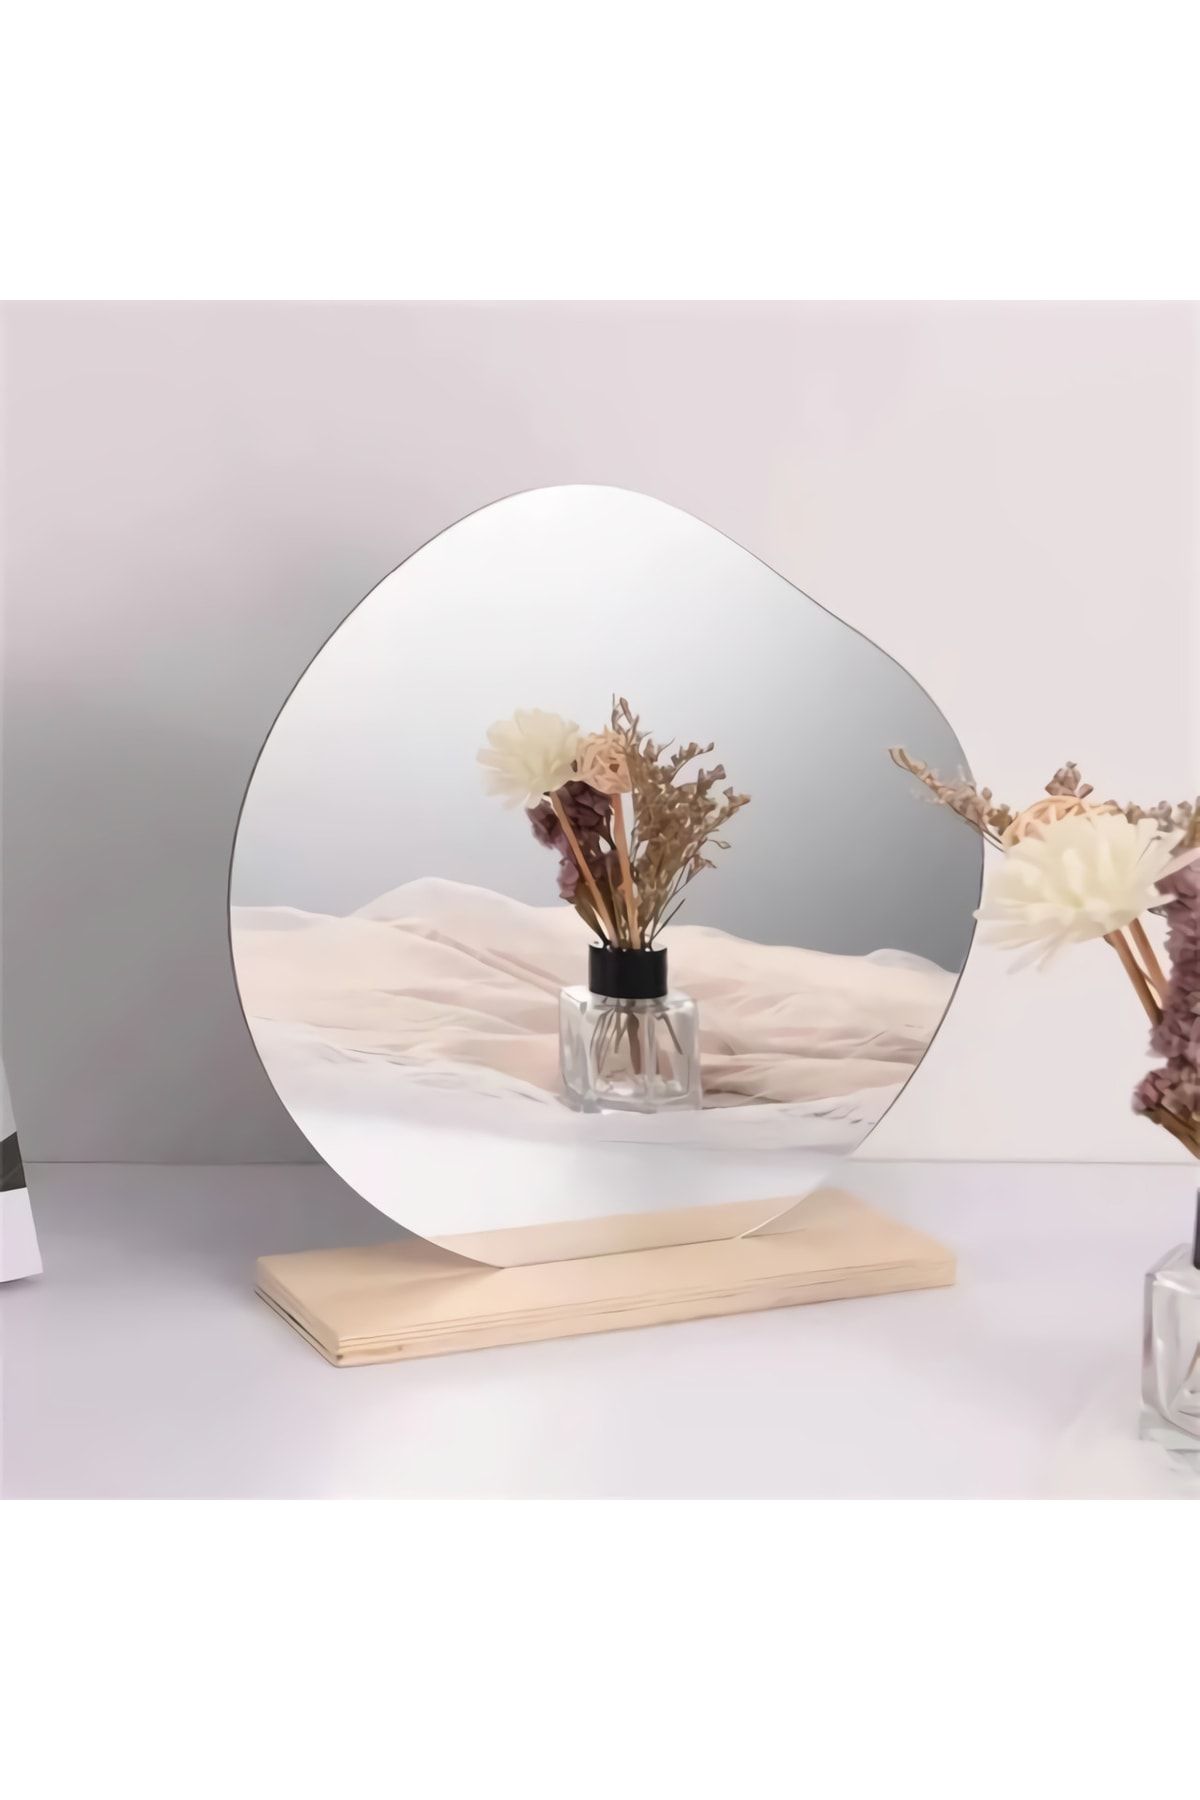 FNC CONCEPT Yuvarlak Makyaj Aynası Ahşap Asimetrik Ayna Dekoratif Selfie Aynası Ev Dekorasyon 23x23 Cm